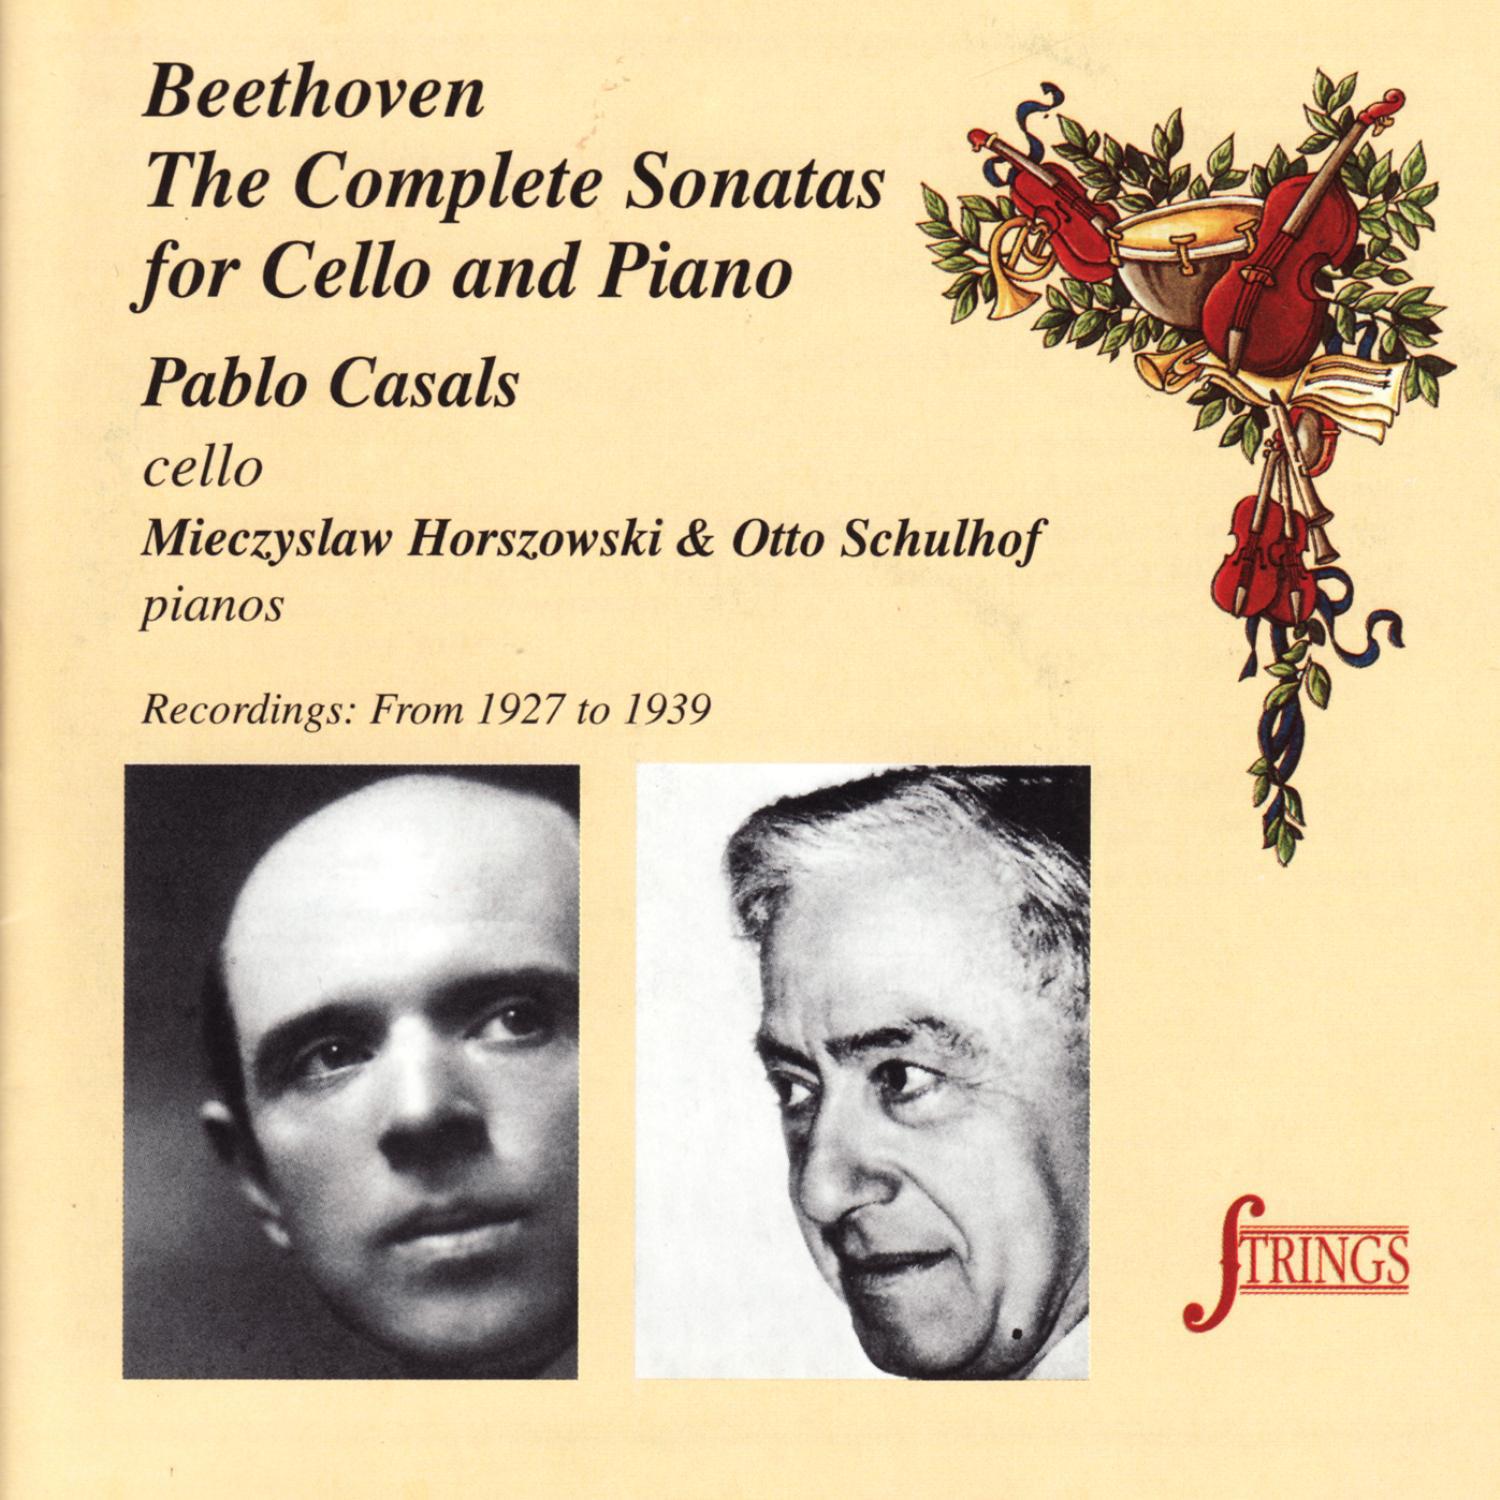 Sonata No. 5 for Cello and Piano in D Major, Op. 102 No. 2: III. Allegro, Allegro fugato